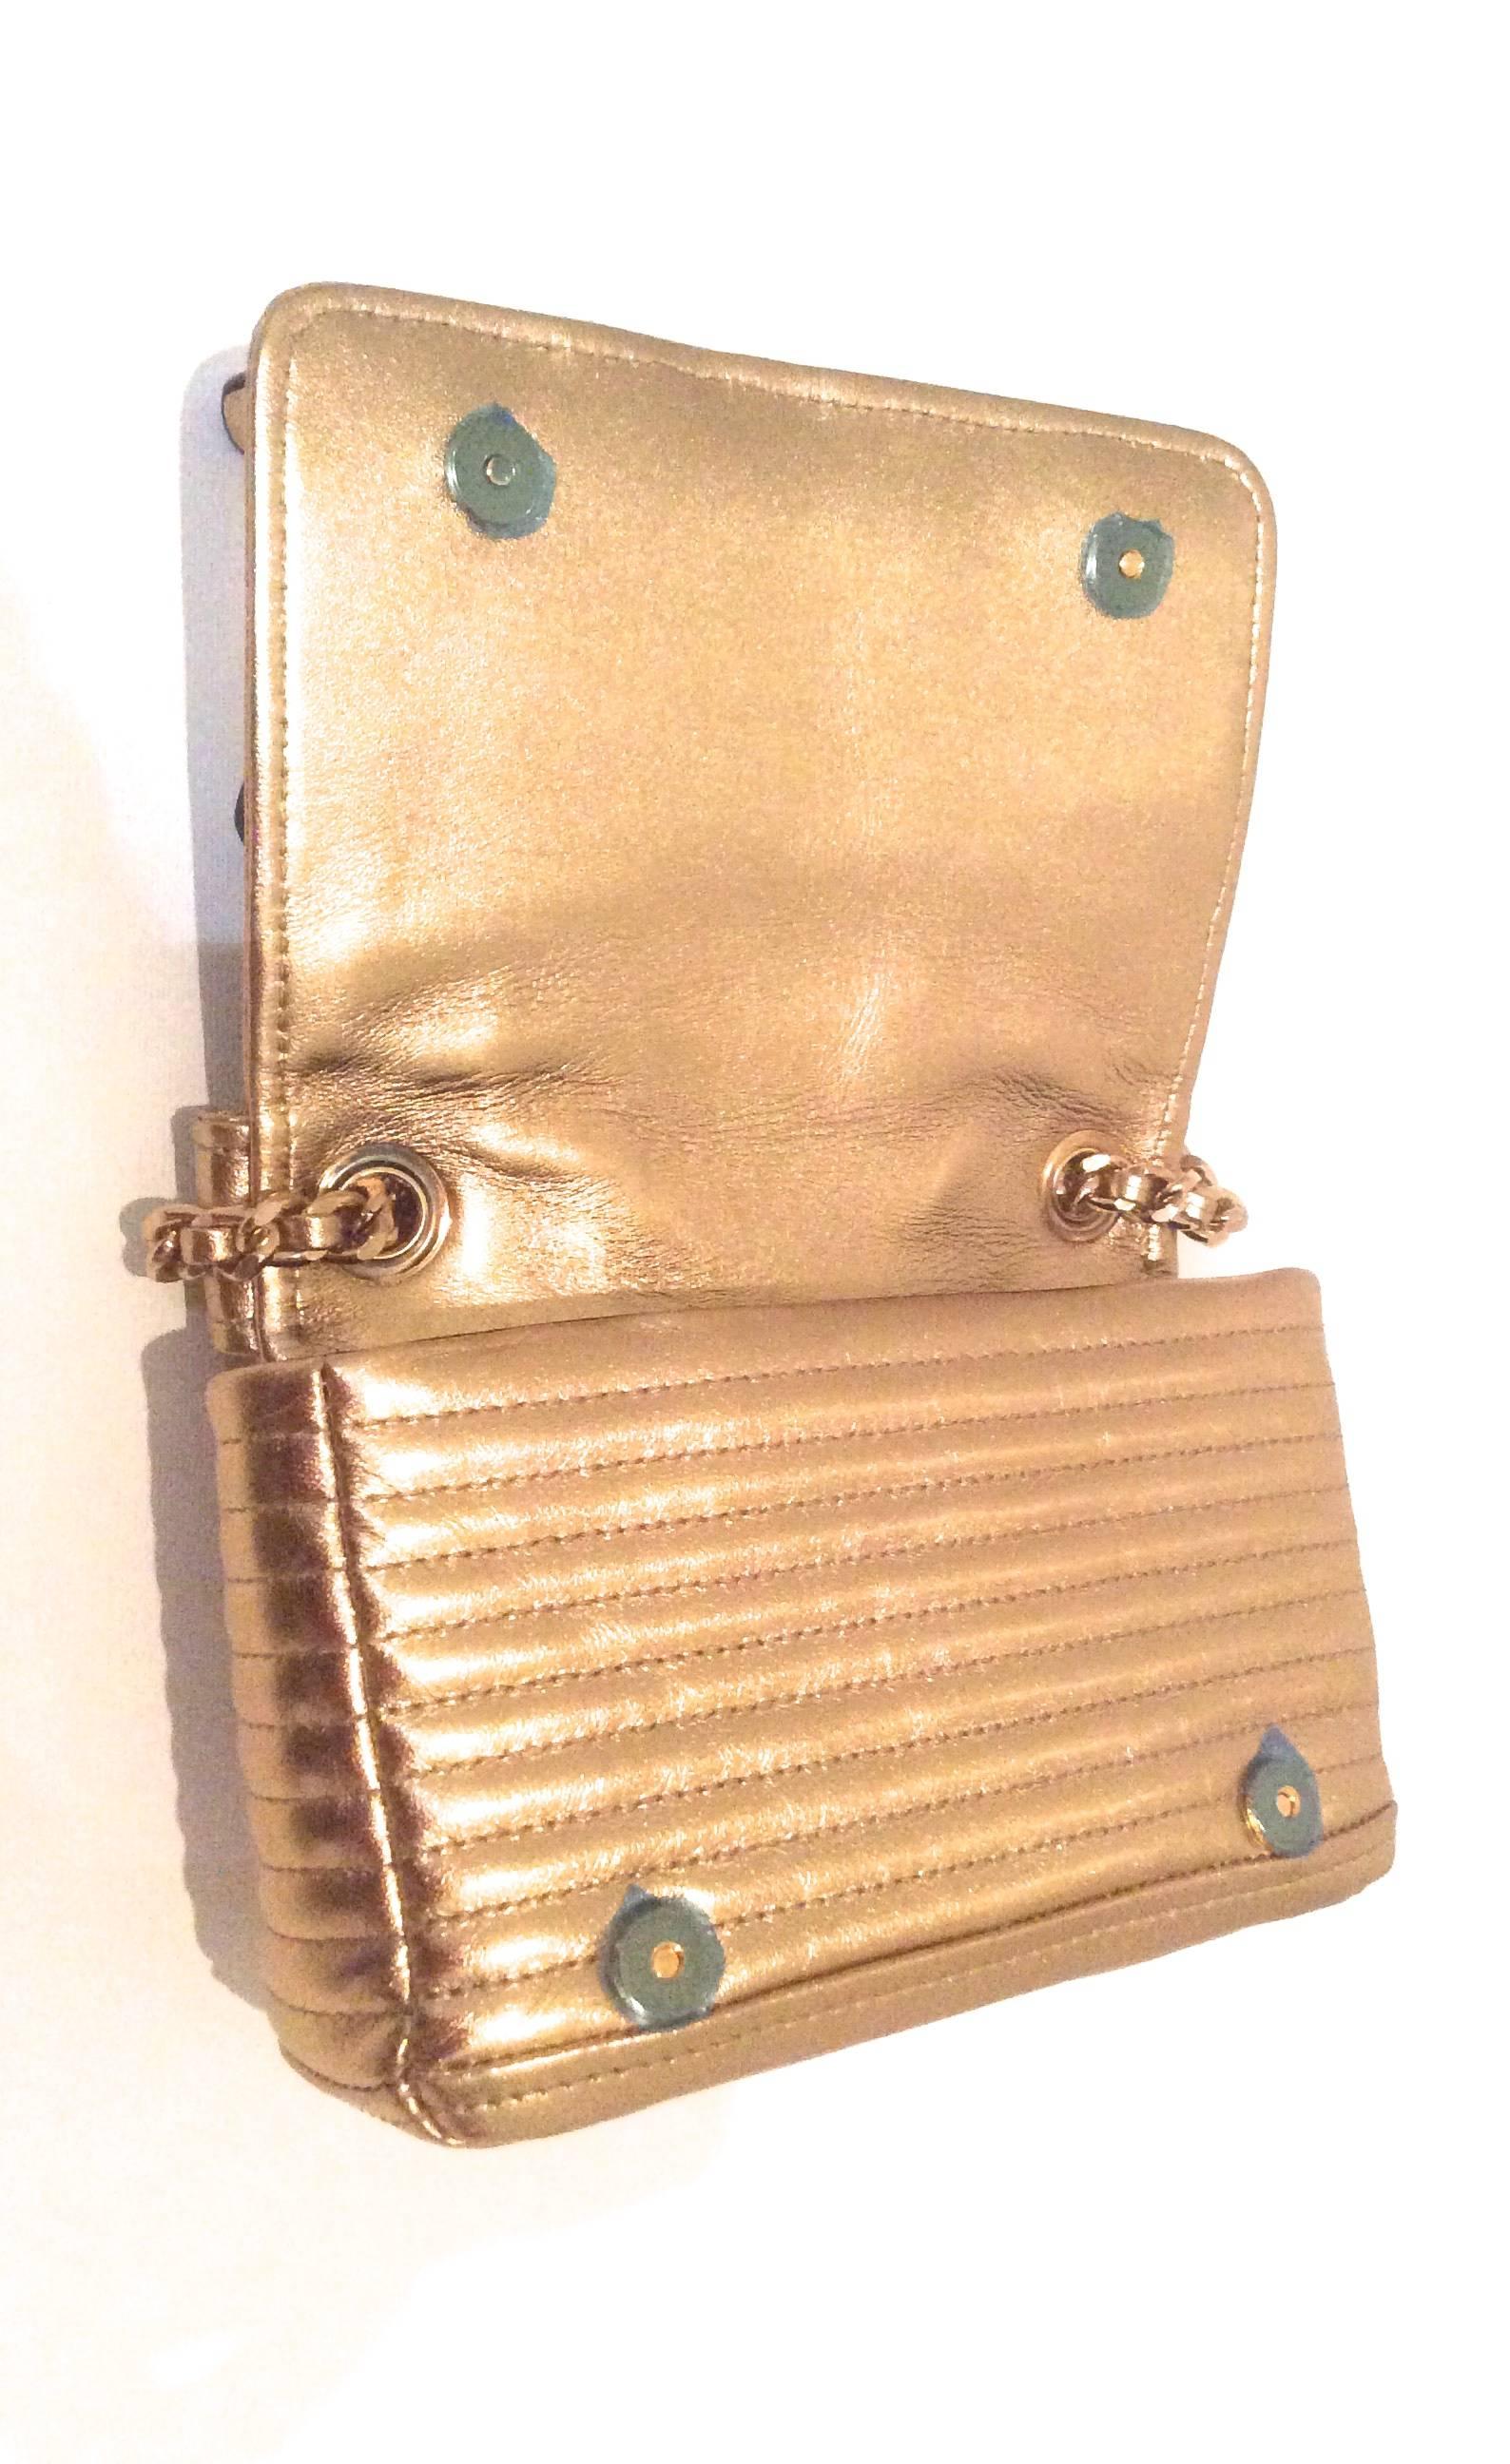 Moschino Gold Biker Jacket Handbag - Rare 1